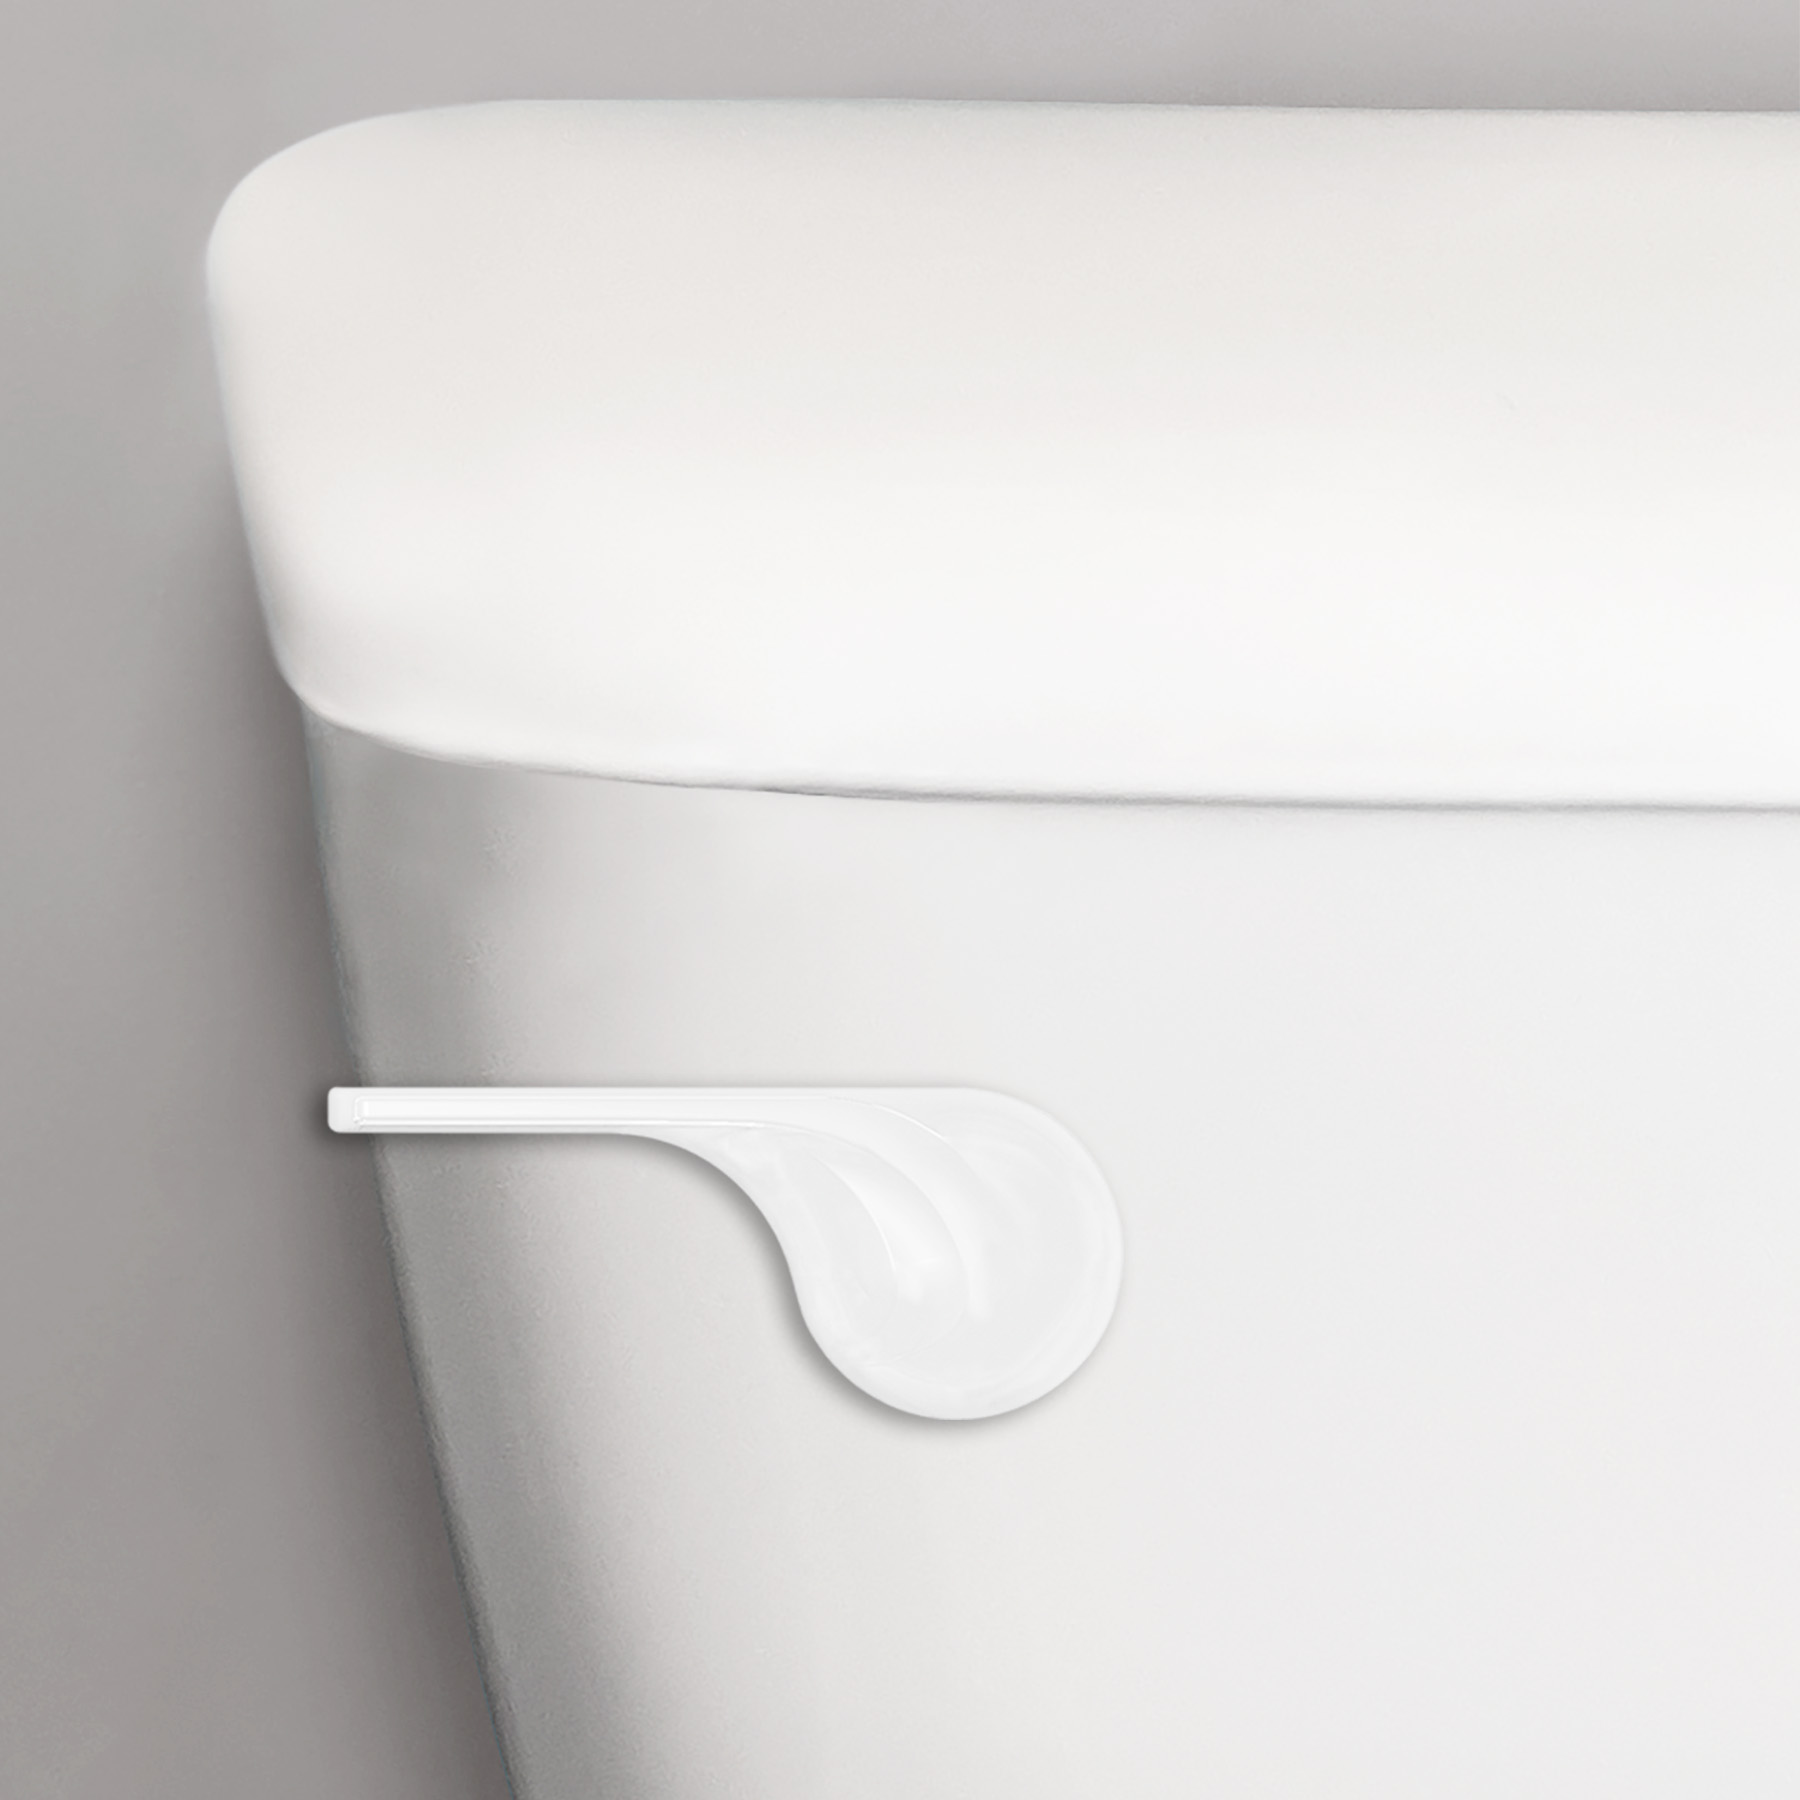 White wave style toilet handle closeup on a toilet tank